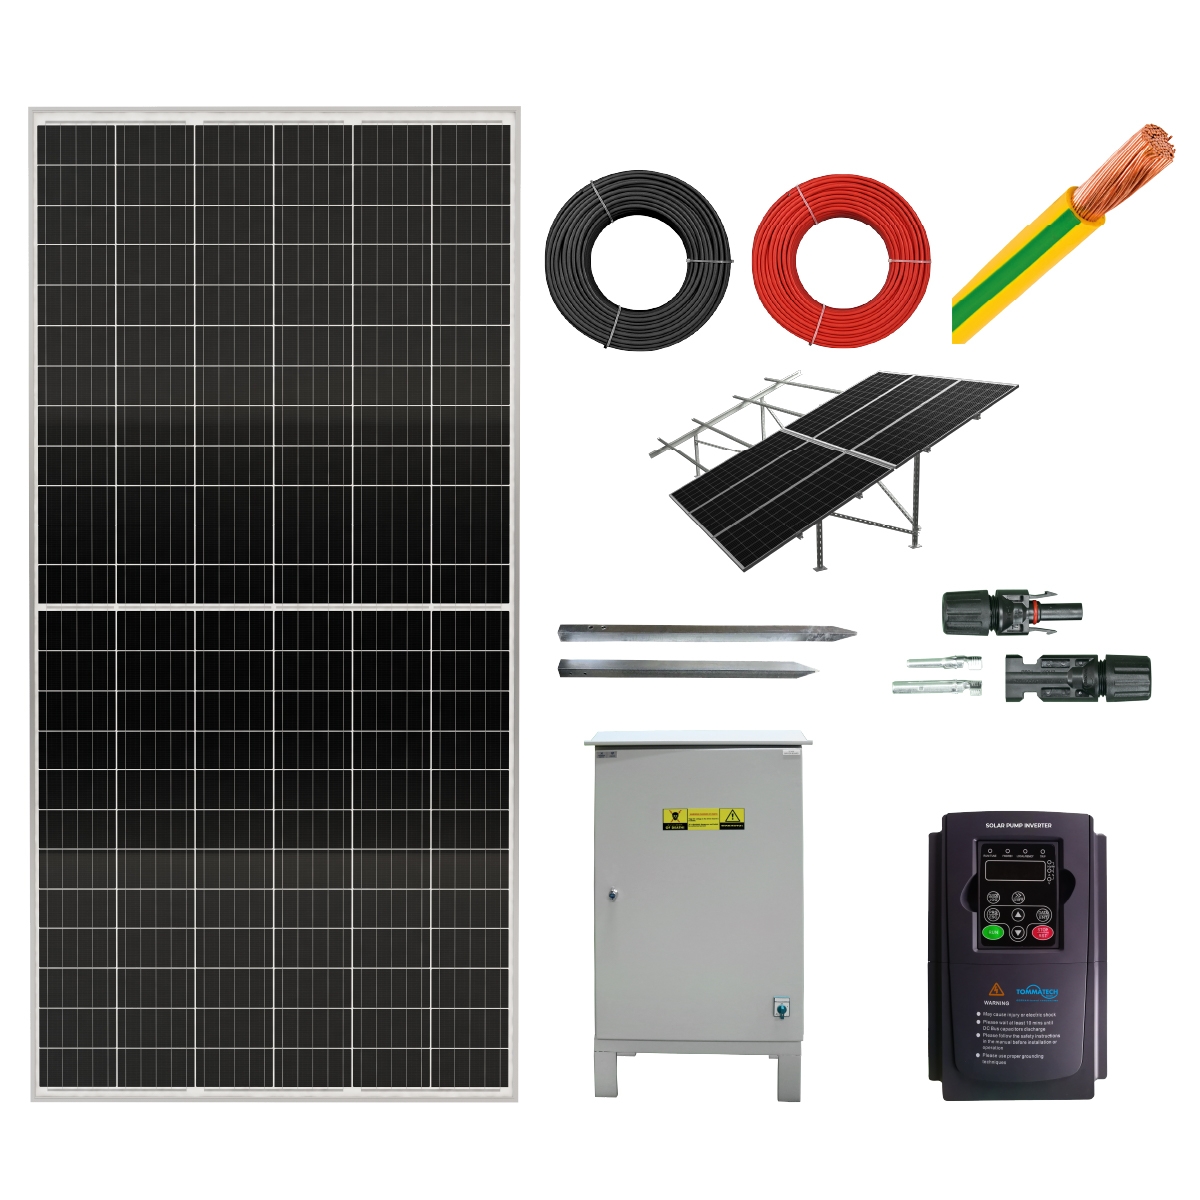 15HP-11 KW 3 ~ 380V Pump Solar Irrigation Solution